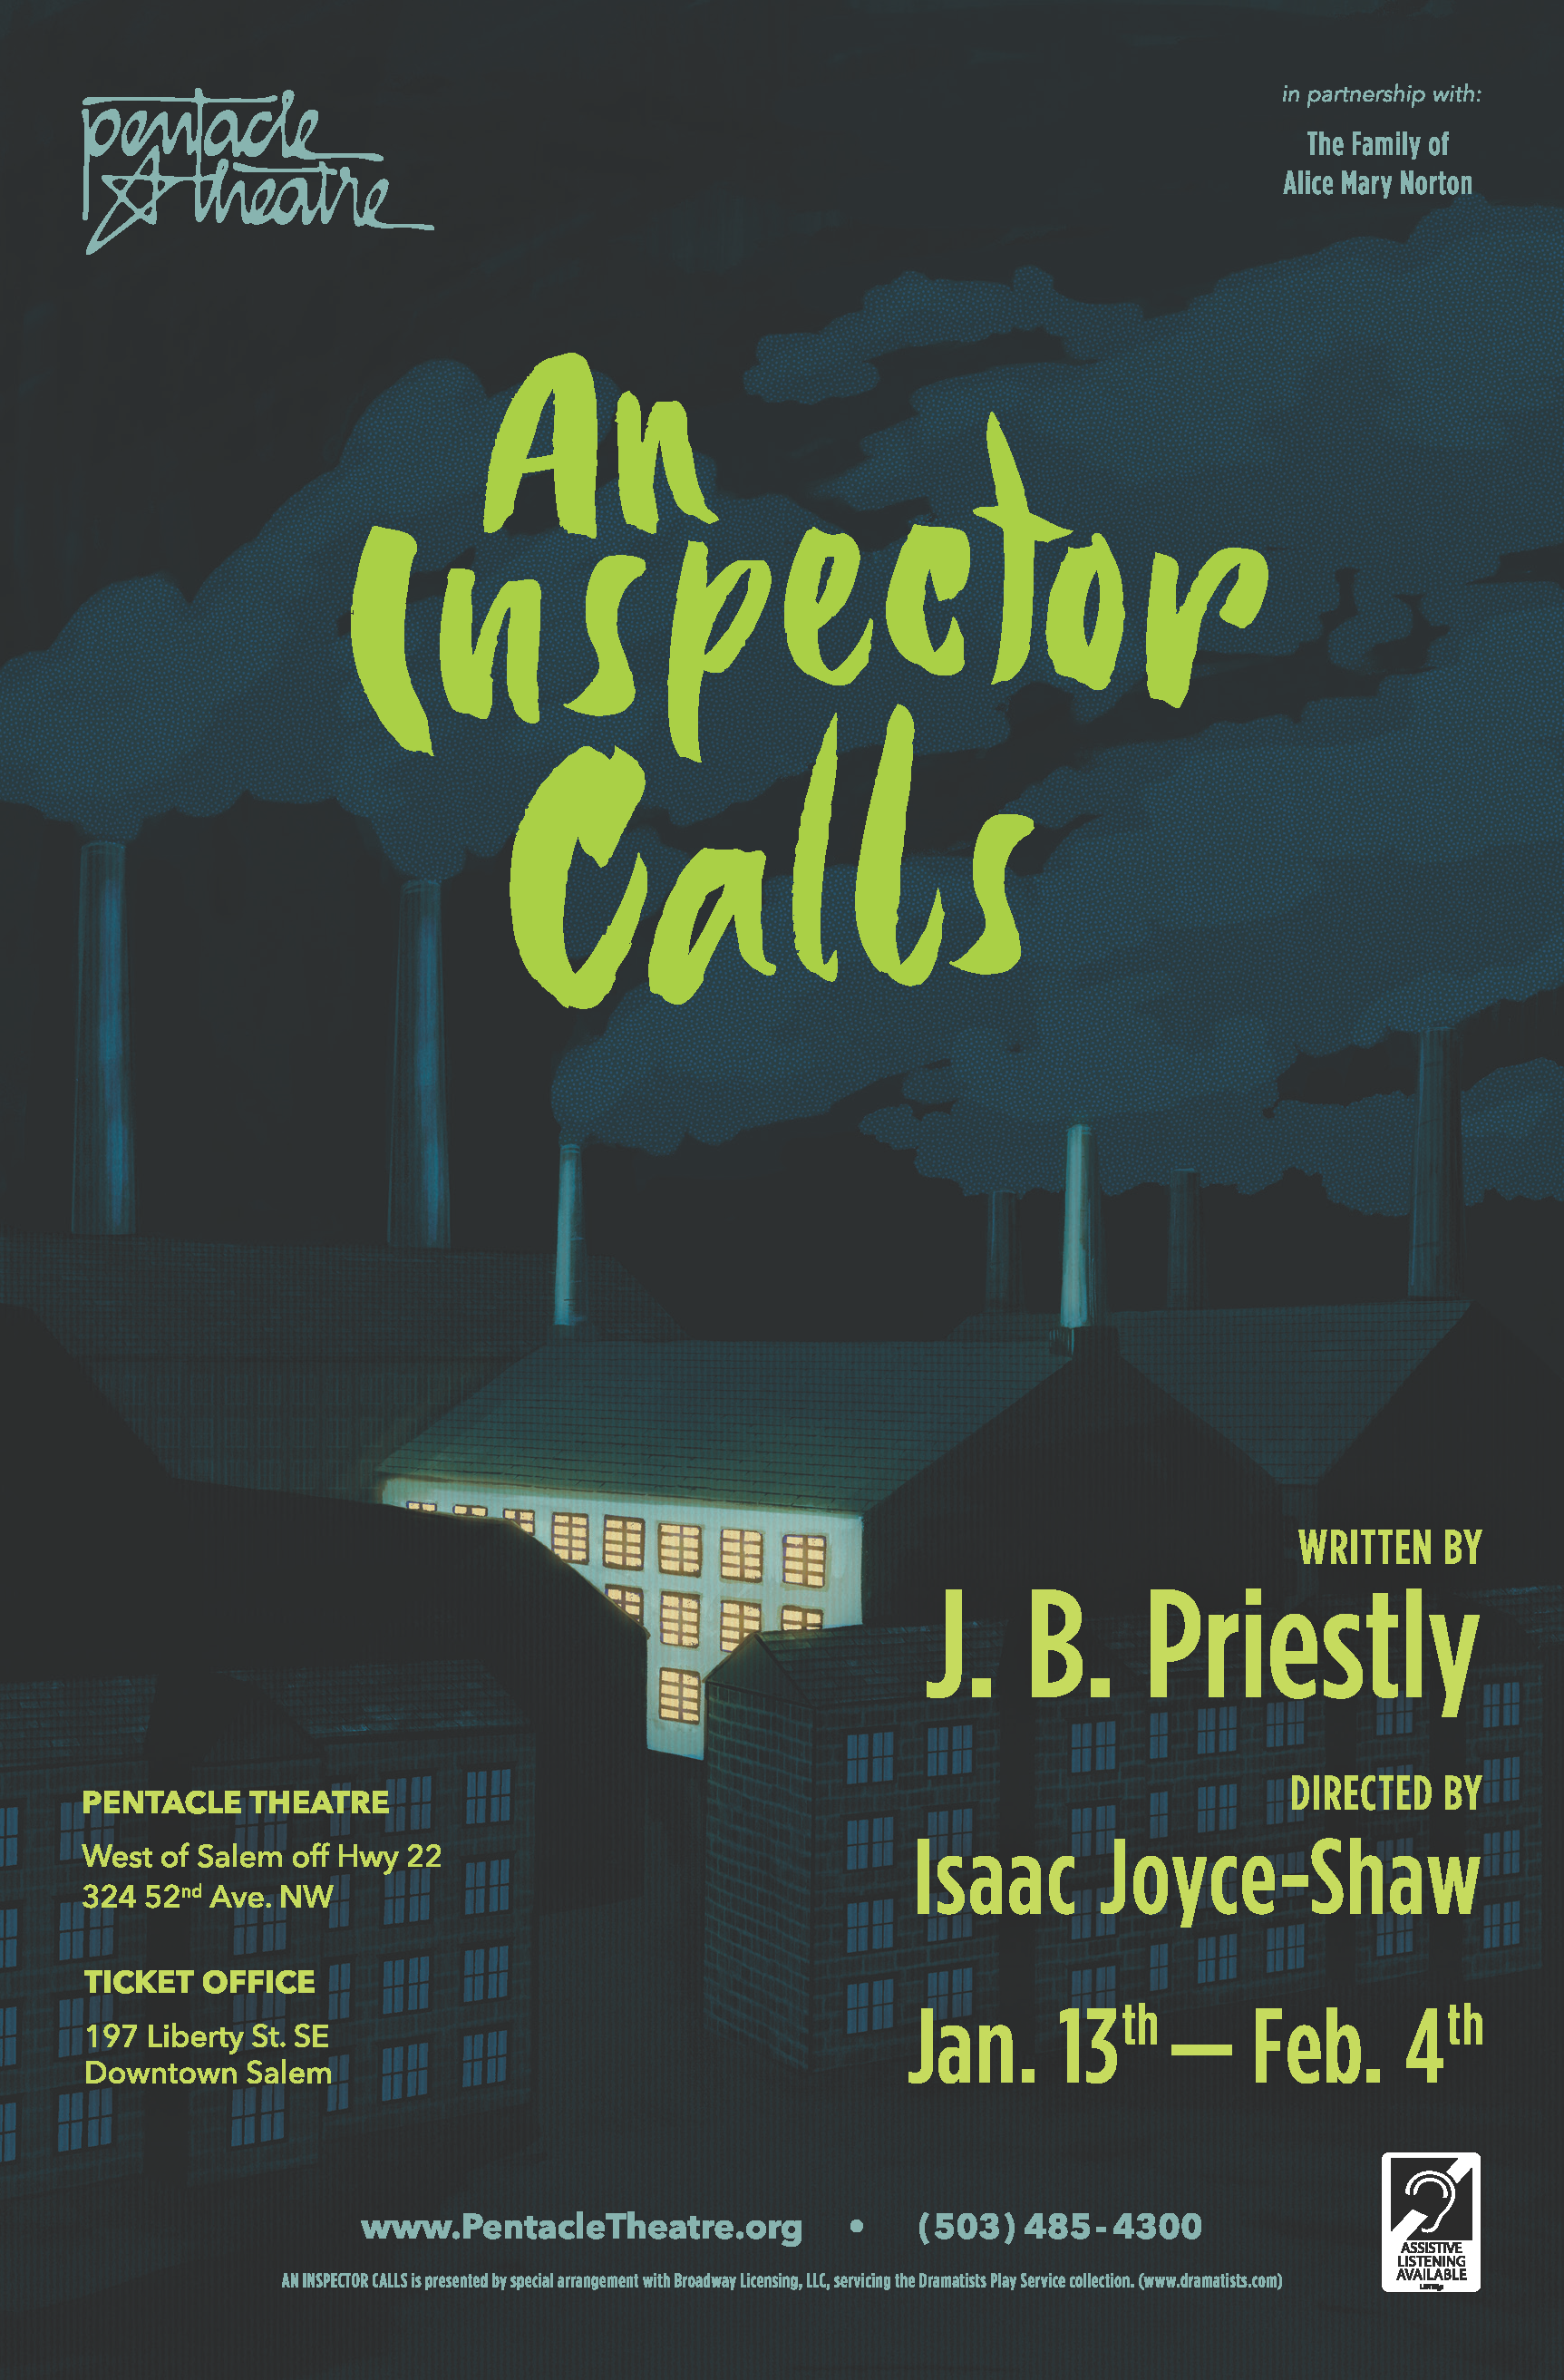 An Inspector Calls opens Jan. 13